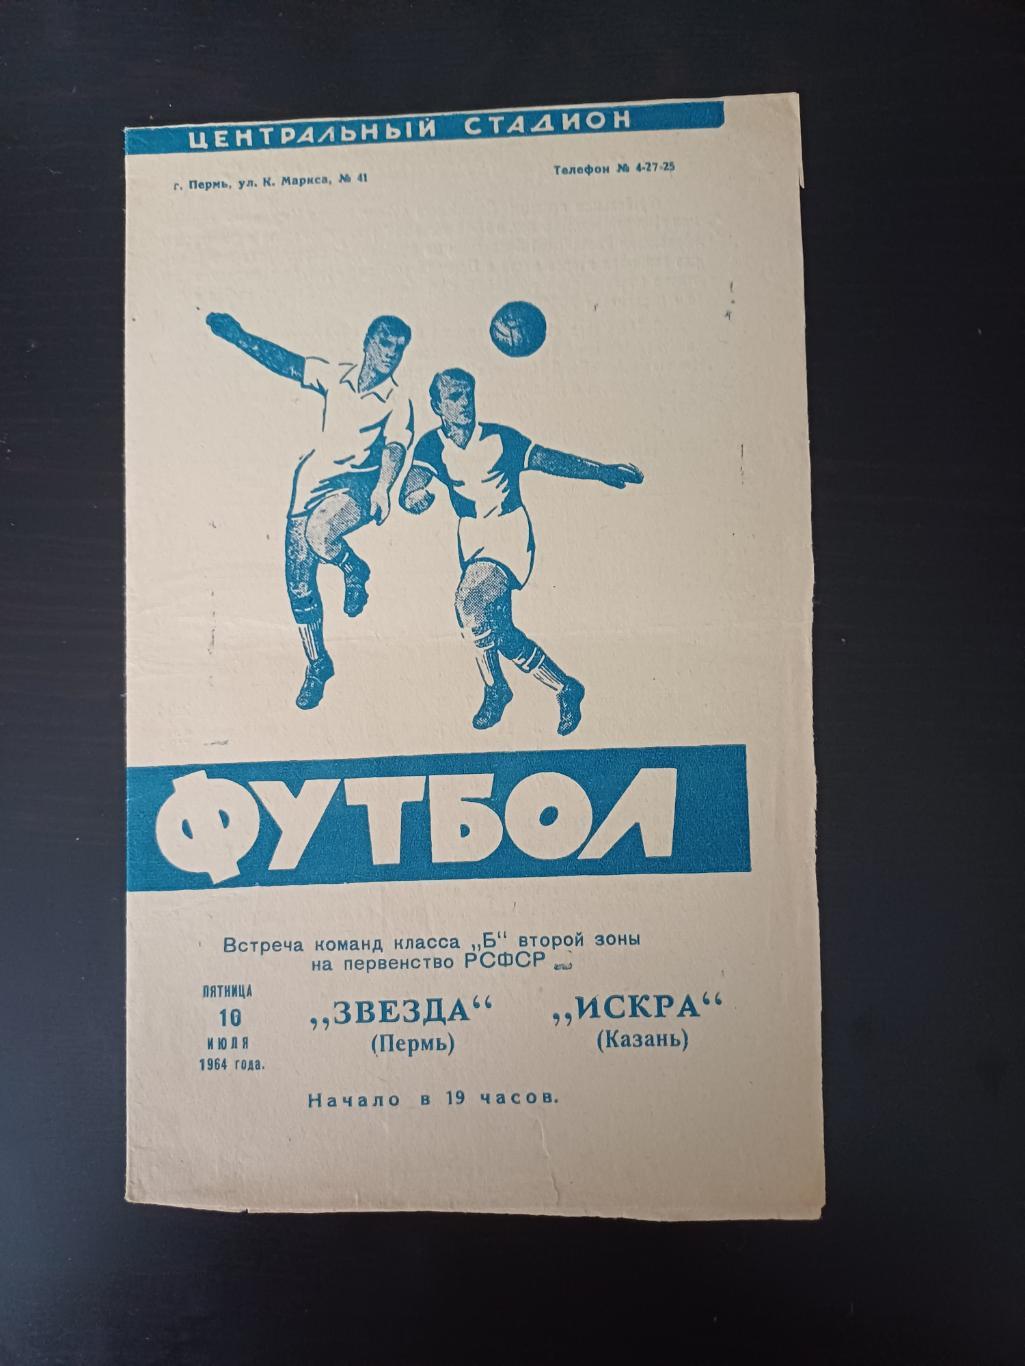 Звезда (Пермь) - Искра (Казань) 1964